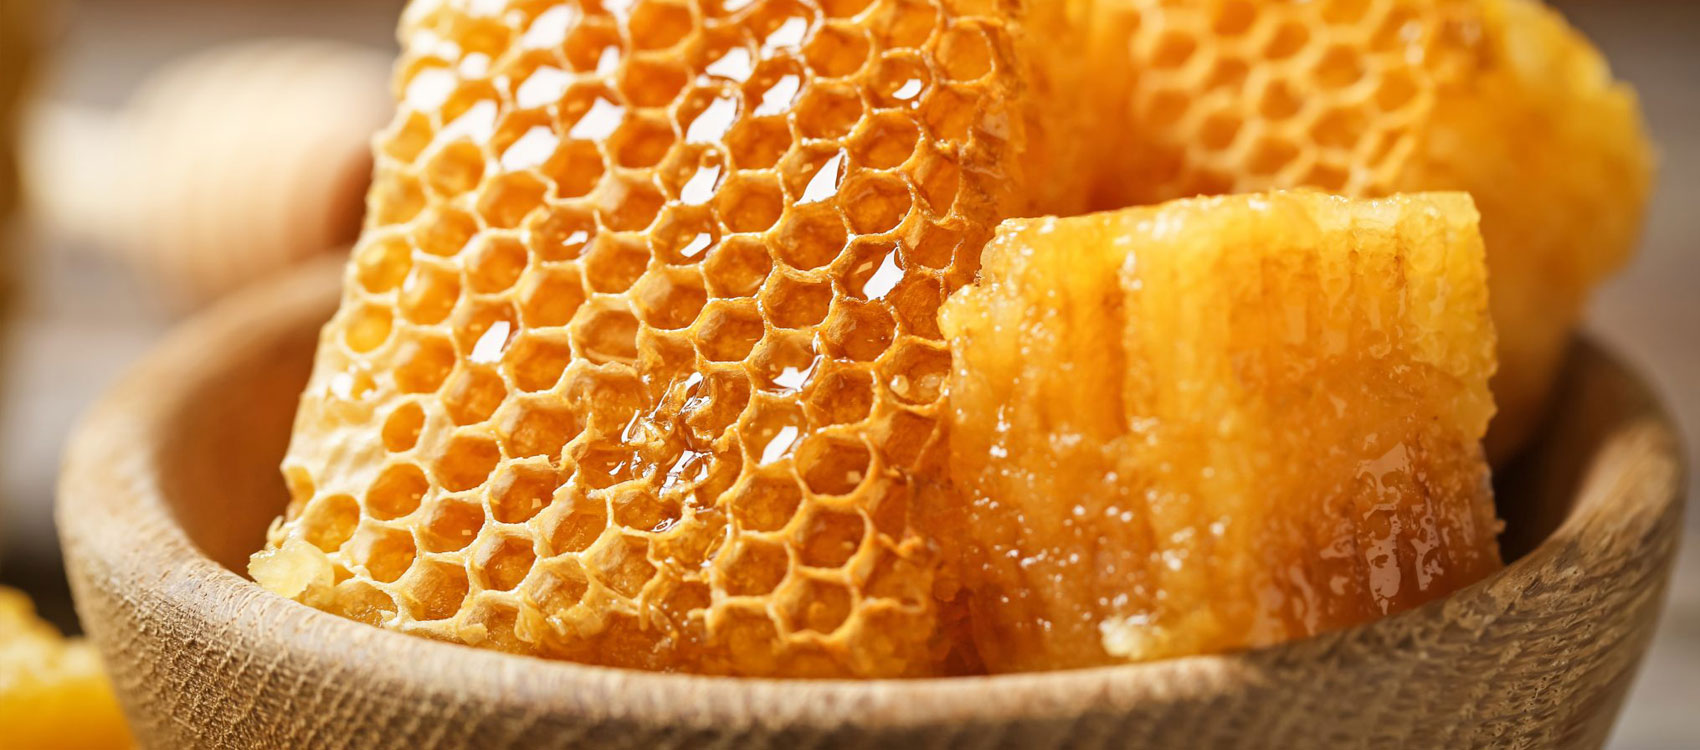 За настоящим мёдом к настоящим пчёлам